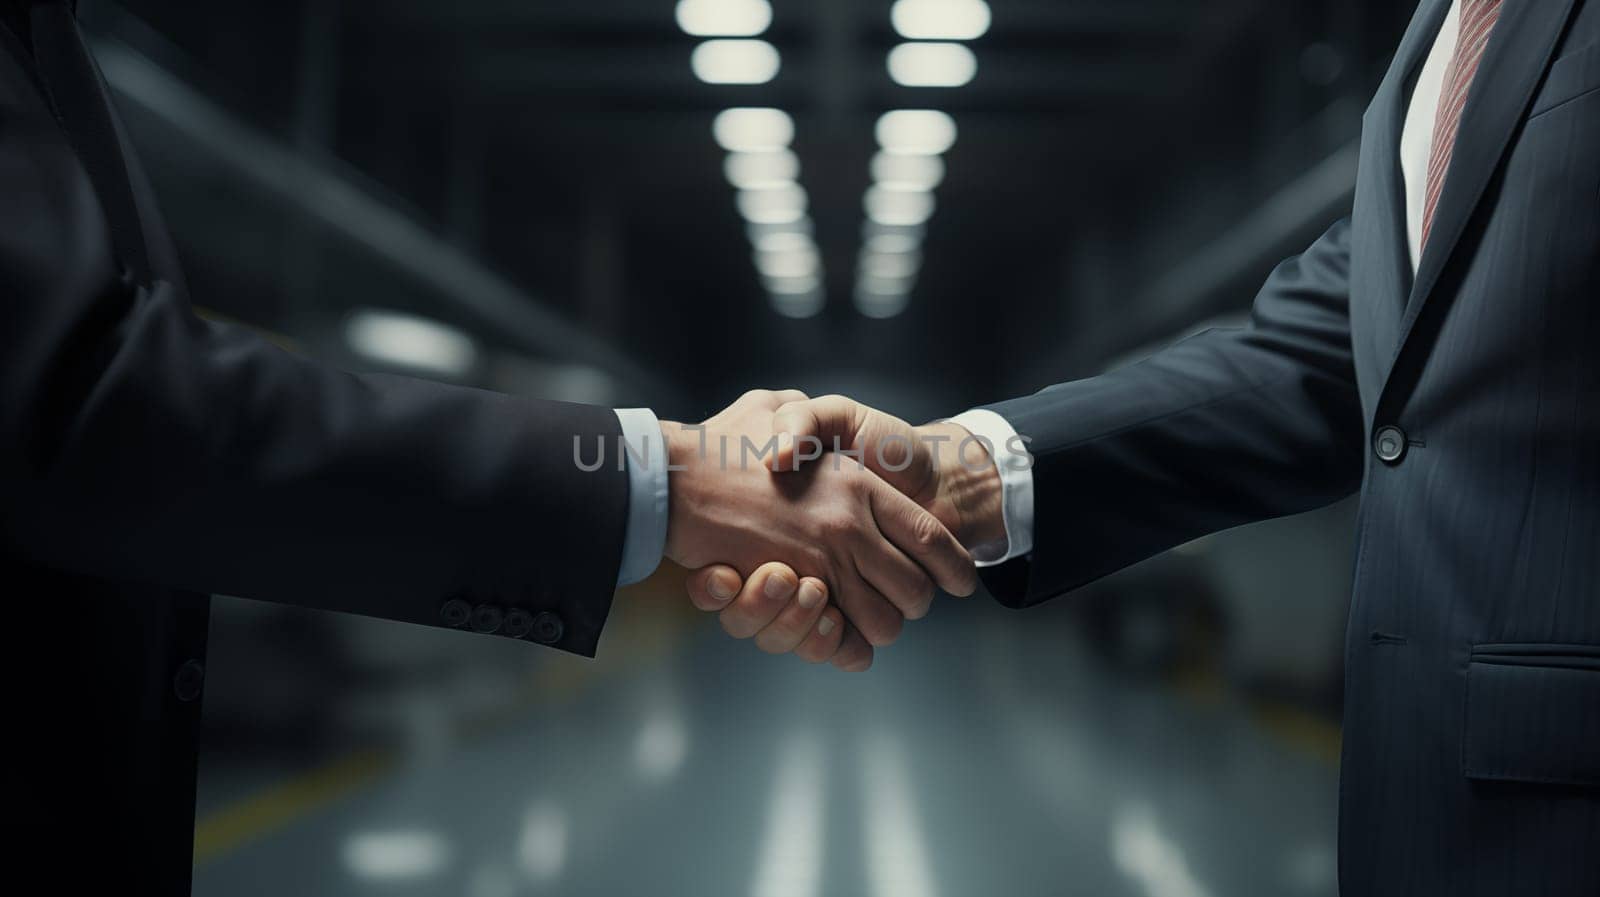 Handshake of men in business suits, close up, indoor.